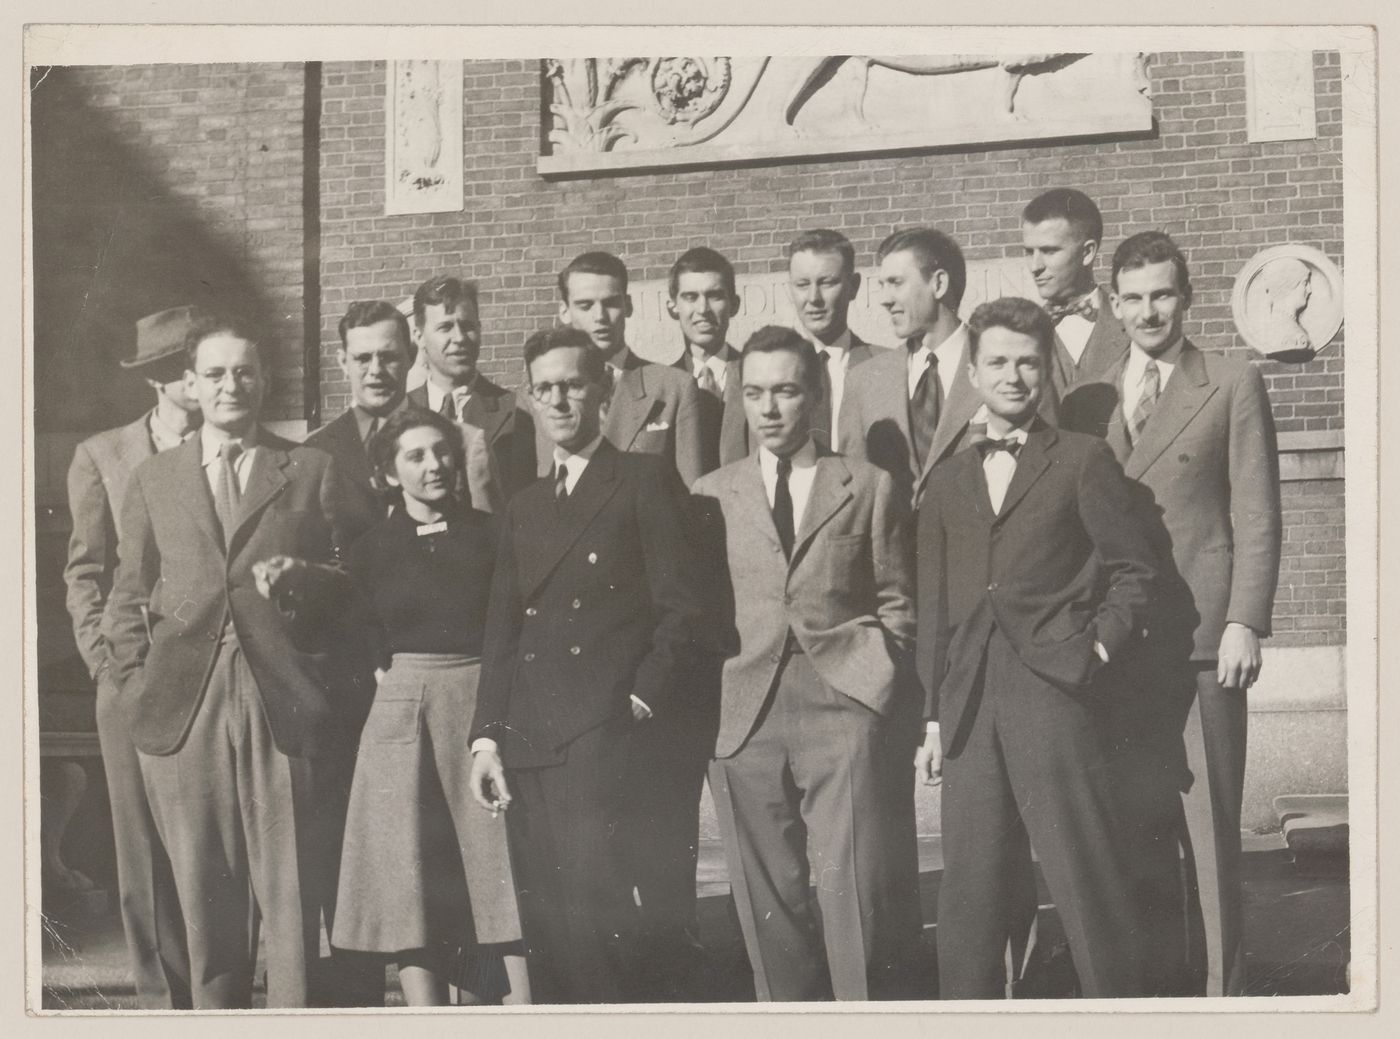 Parkin and his Harvard classmates